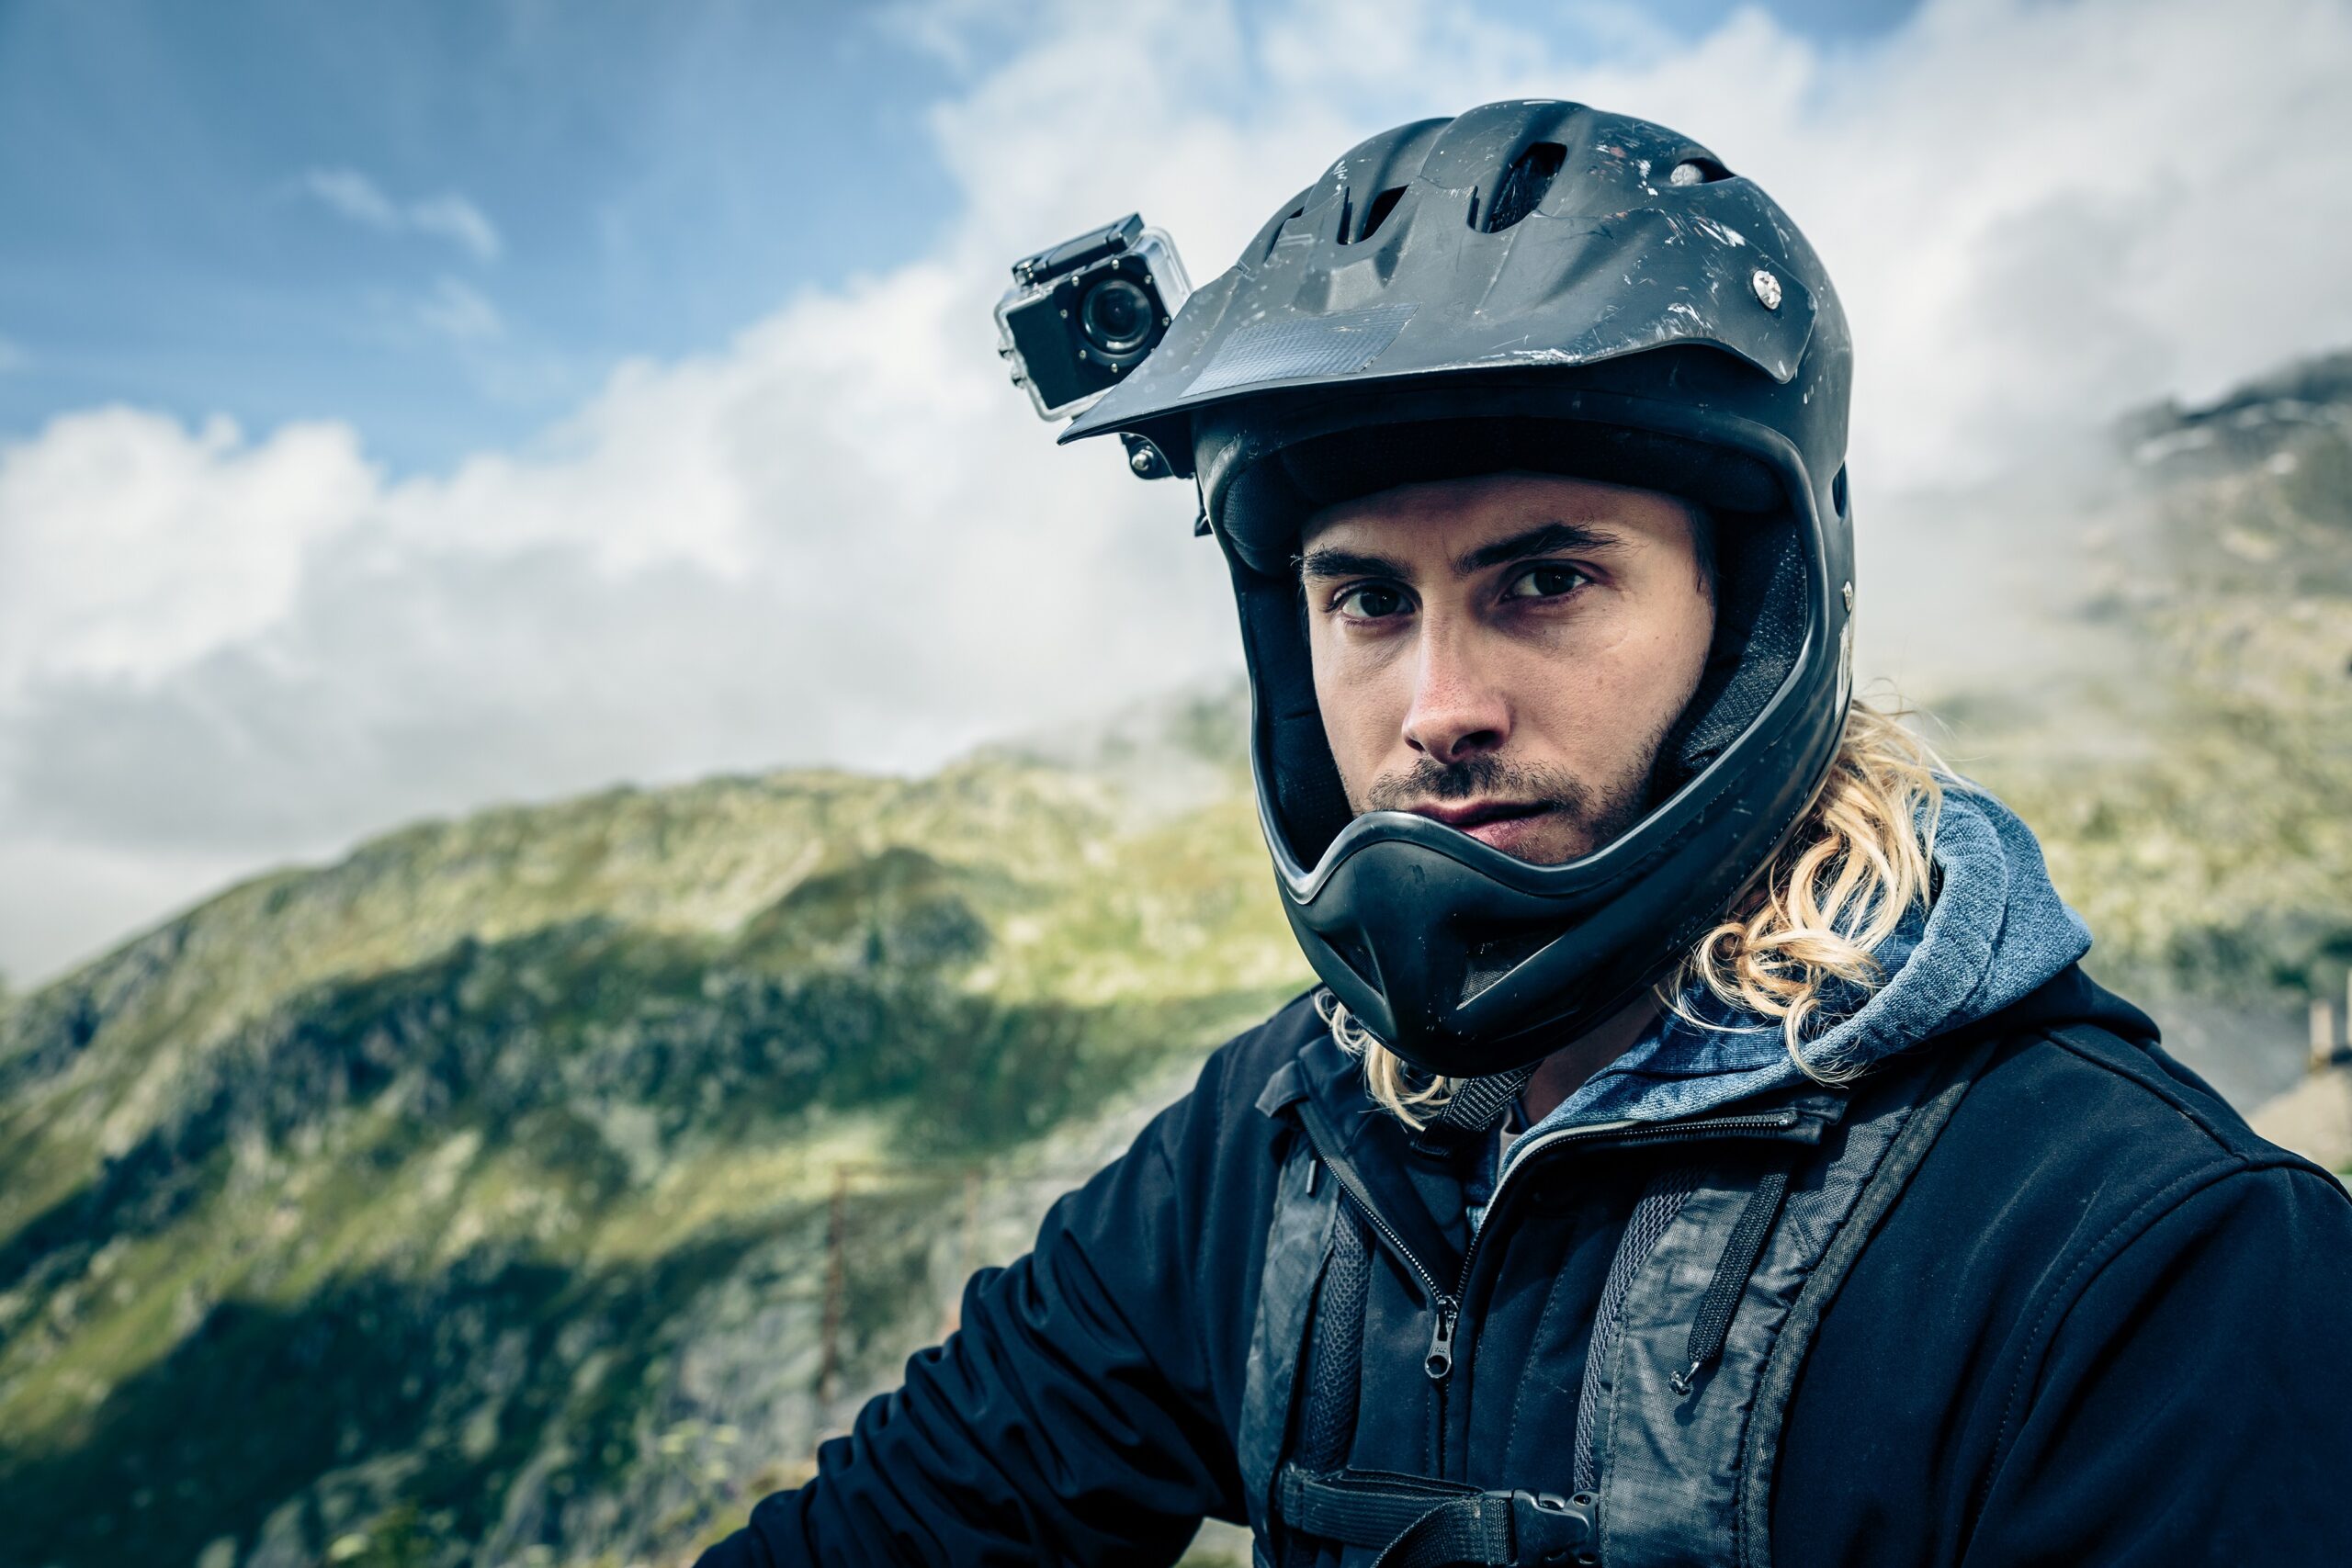 黒いヘルメットにカメラを取り付けた外国人の男性が晴れた空と山を背景にしてこちらを見ている